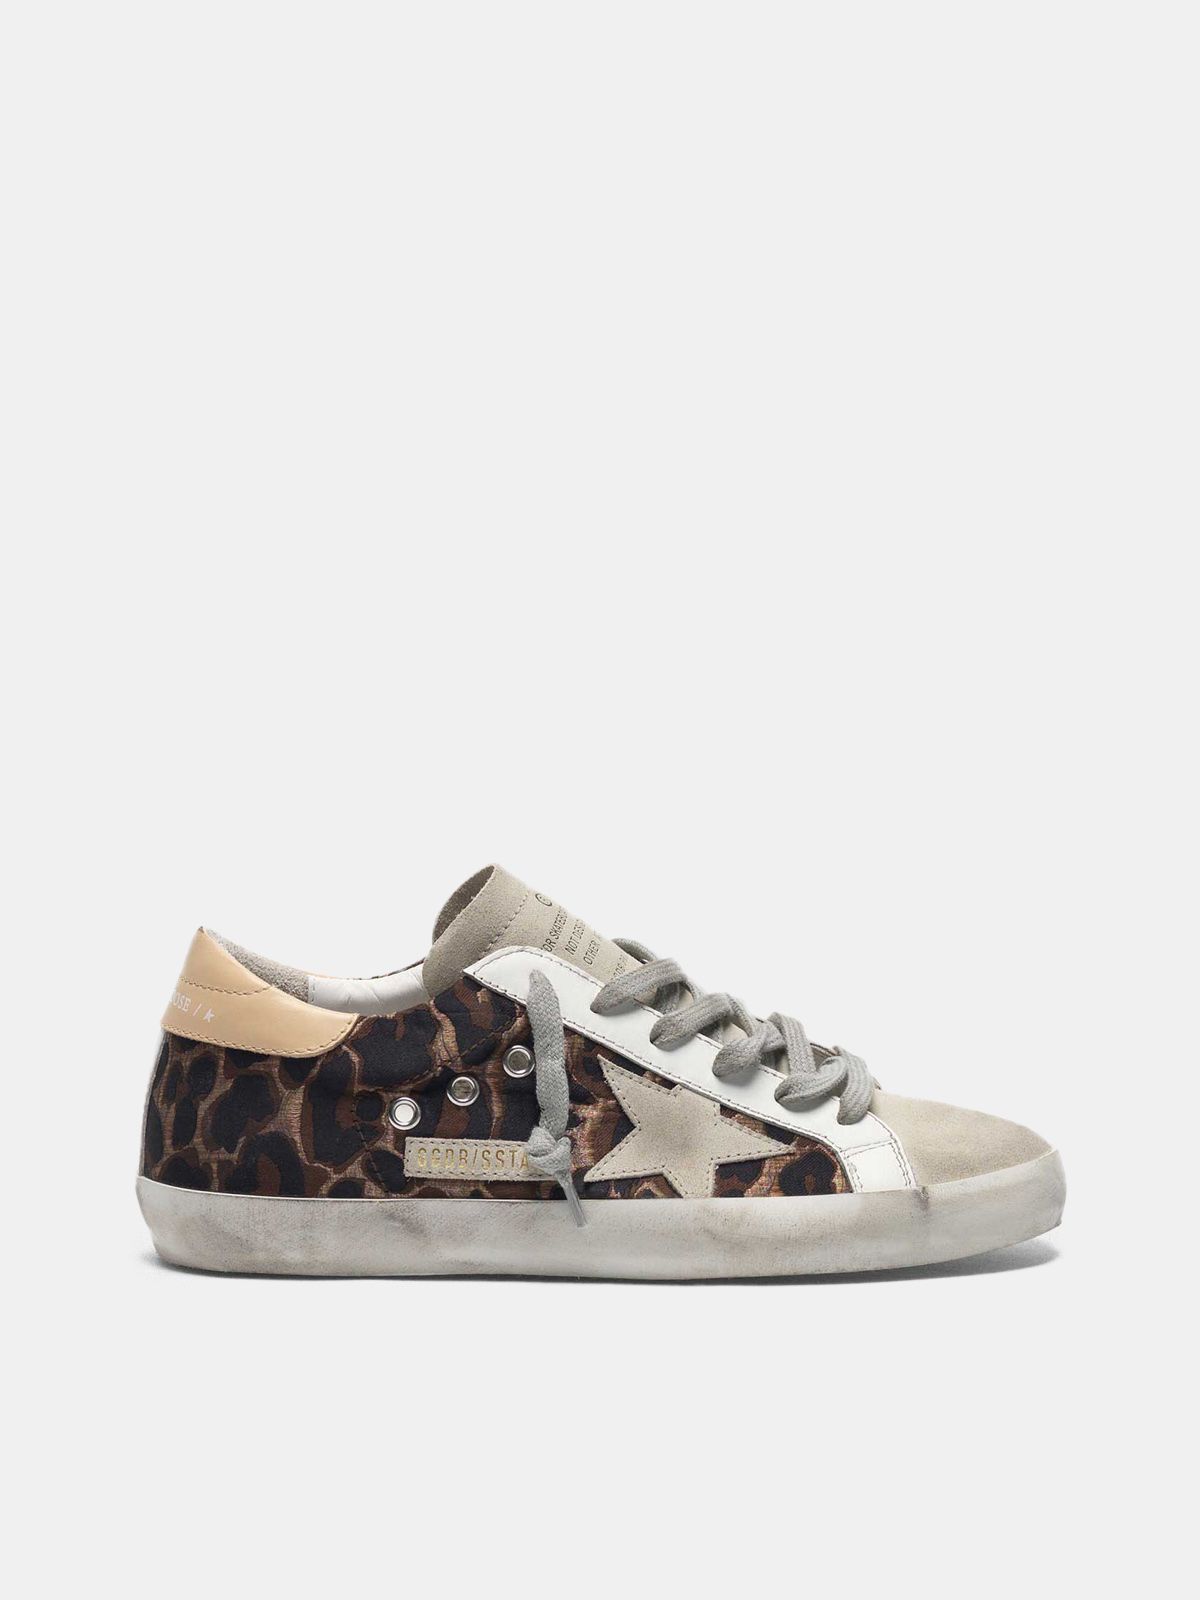 golden goose sneakers leopard